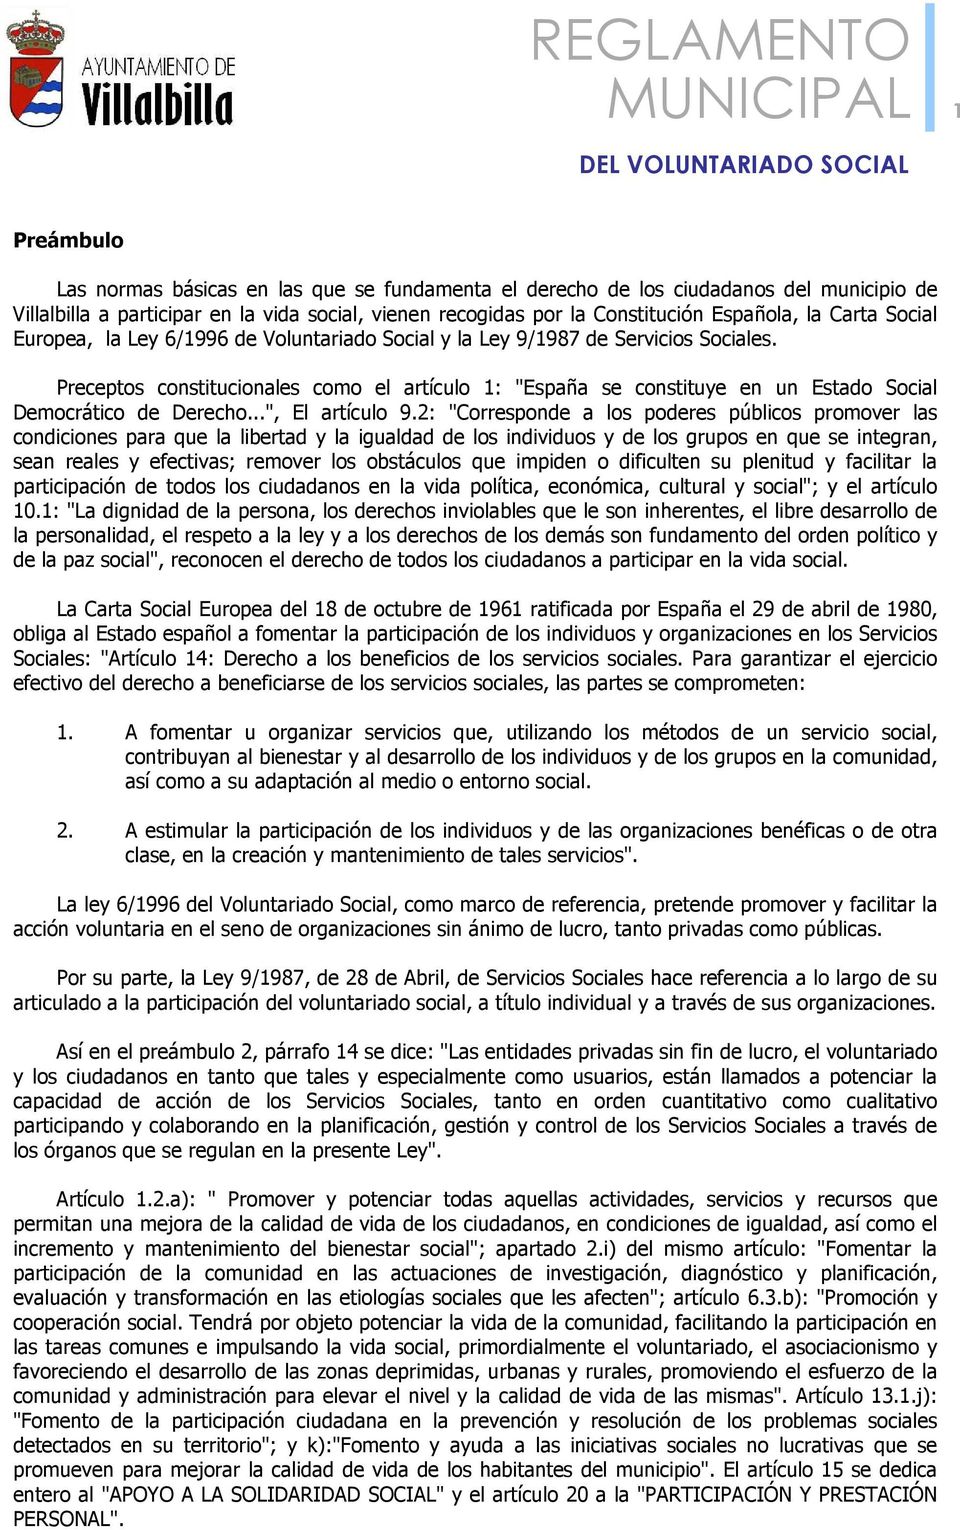 Preceptos constitucionales como el artículo 1: "España se constituye en un Estado Social Democrático de Derecho...", El artículo 9.